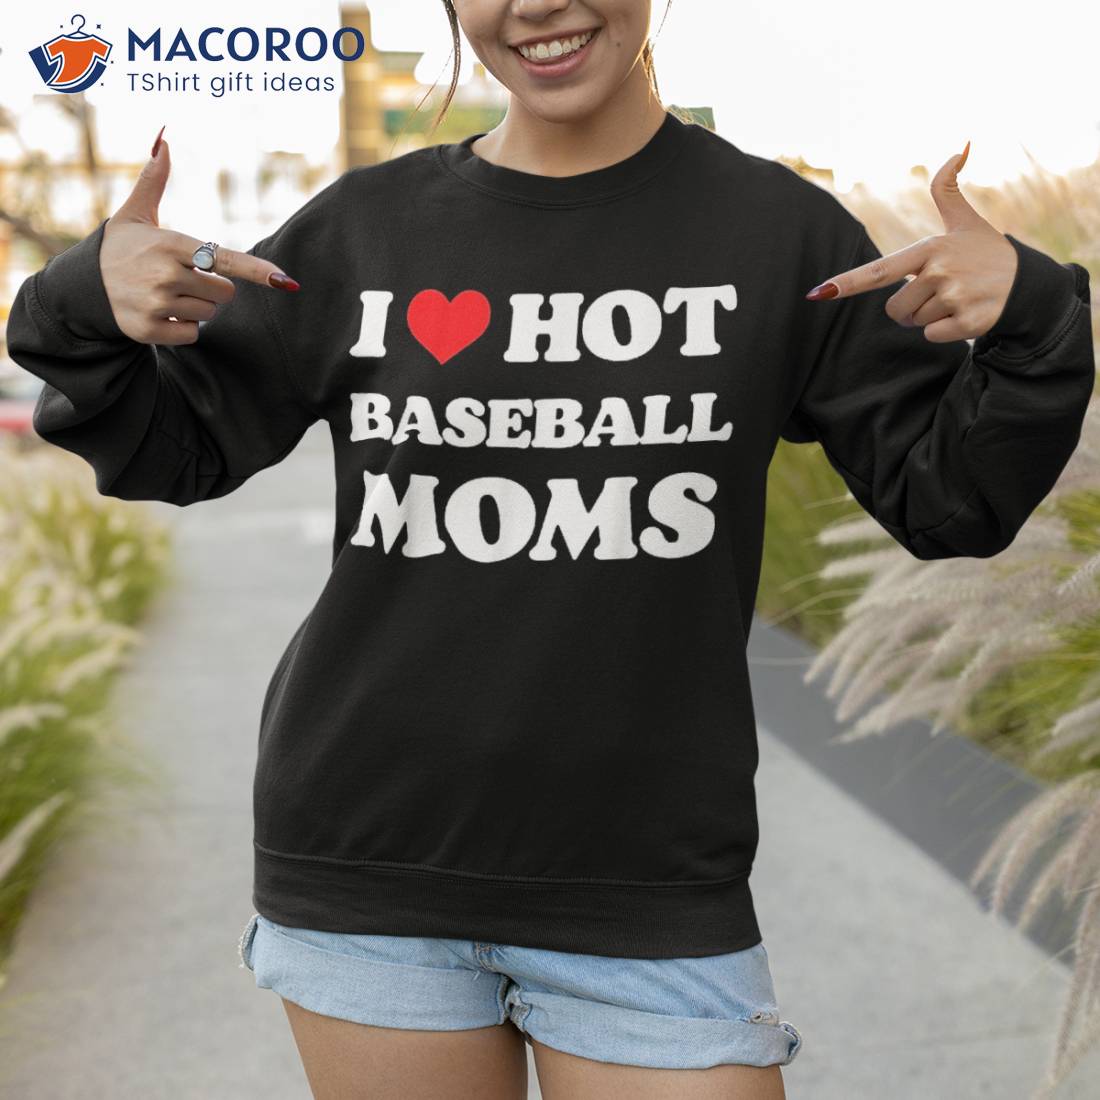 Baseball Heart Shirt, Funny Baseball Tshirt, Love Shirt, Baseball